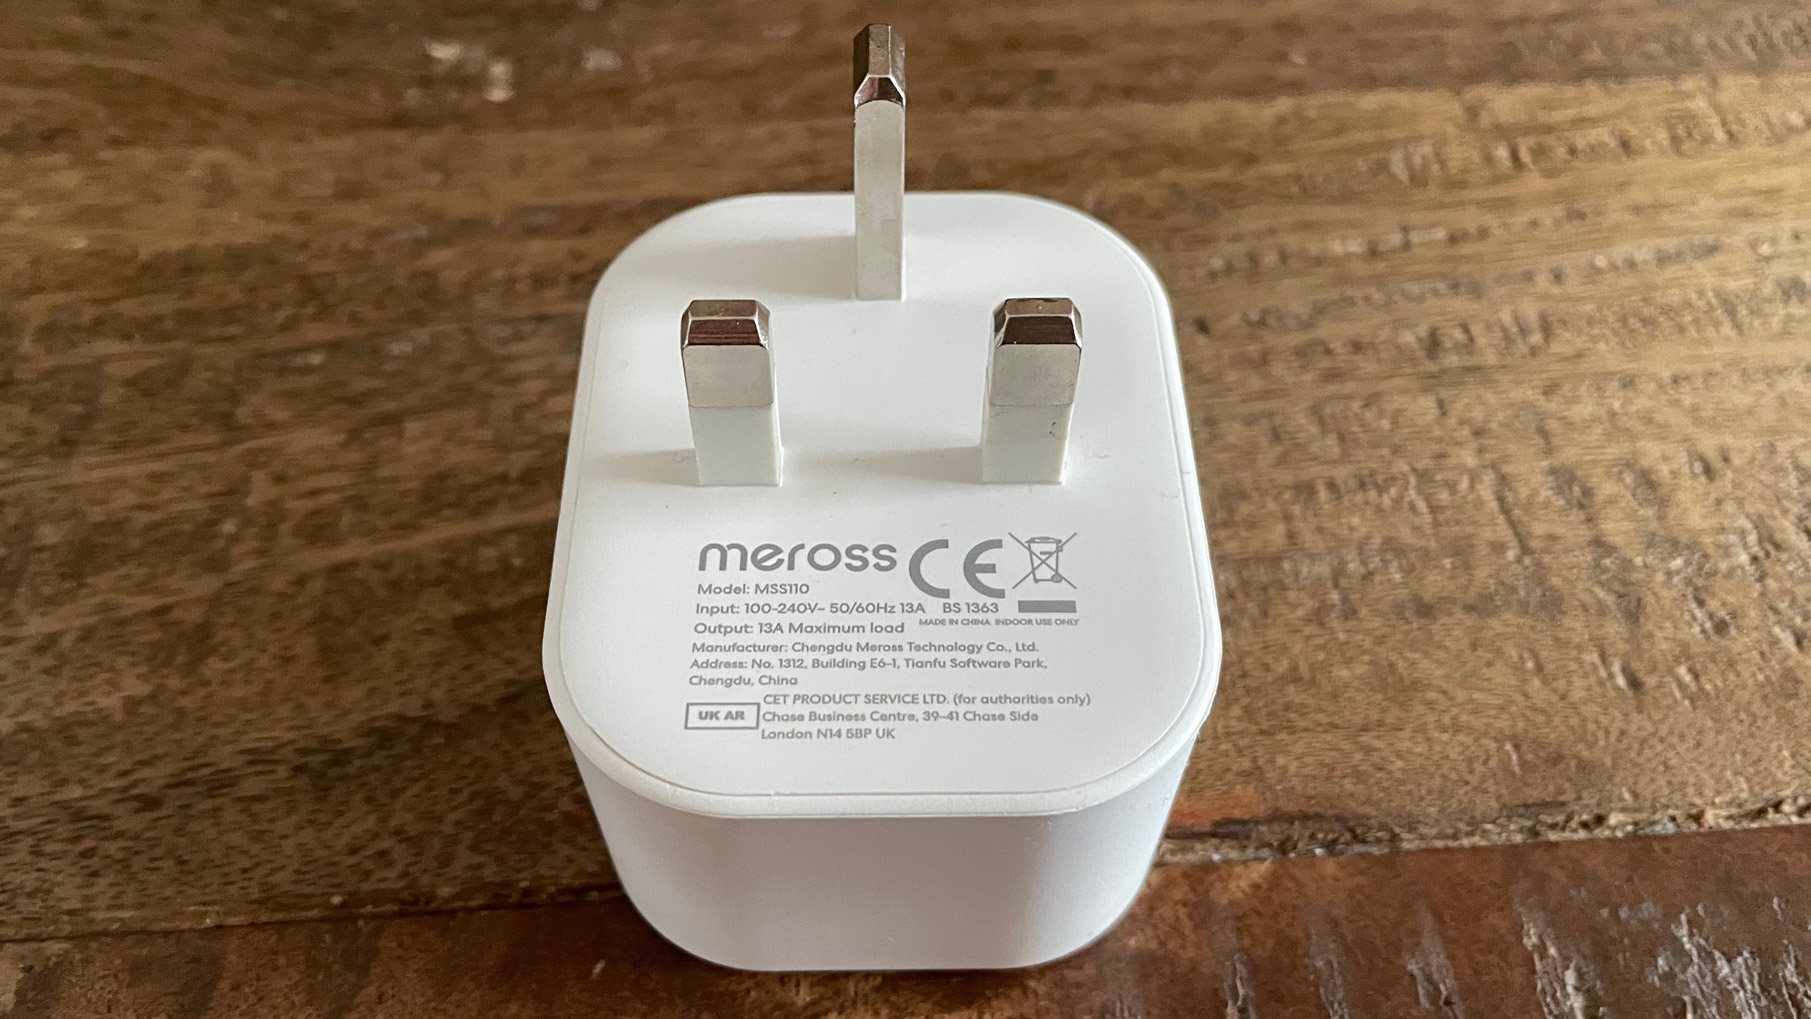 Bakc dari Meross Smart Wi-Fi Plug Mini MSS110 di atas meja kayu